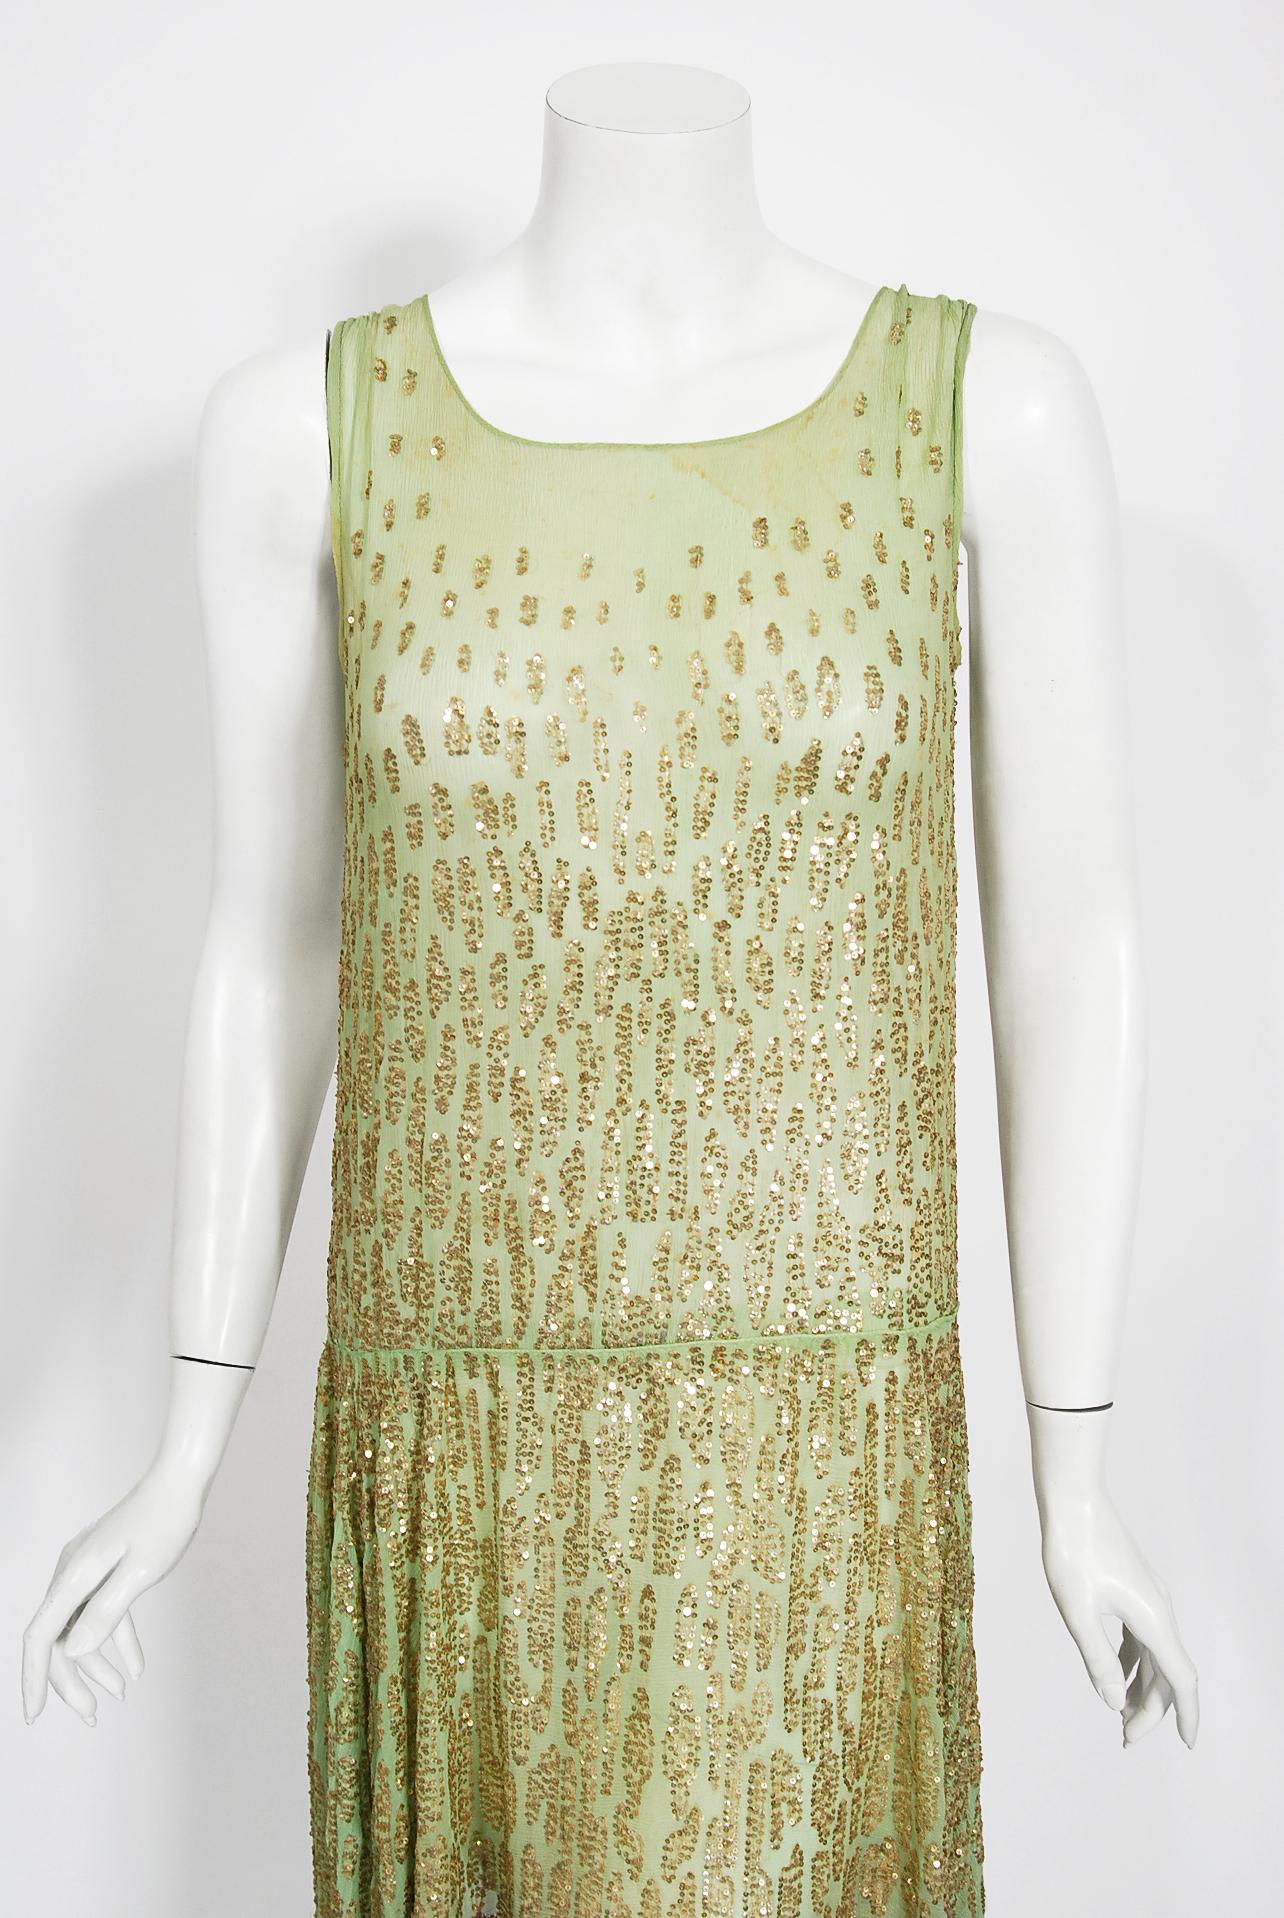 Eine wirklich atemberaubende Französisch Couture funkelnden mint-grün Perlen Flapper Tanzkleid aus der Mitte der 1920er Jahre. Die magische mintgrüne Farbe in Kombination mit den einzigartigen goldfarbenen Mikro-Pailletten berührt unser kollektives